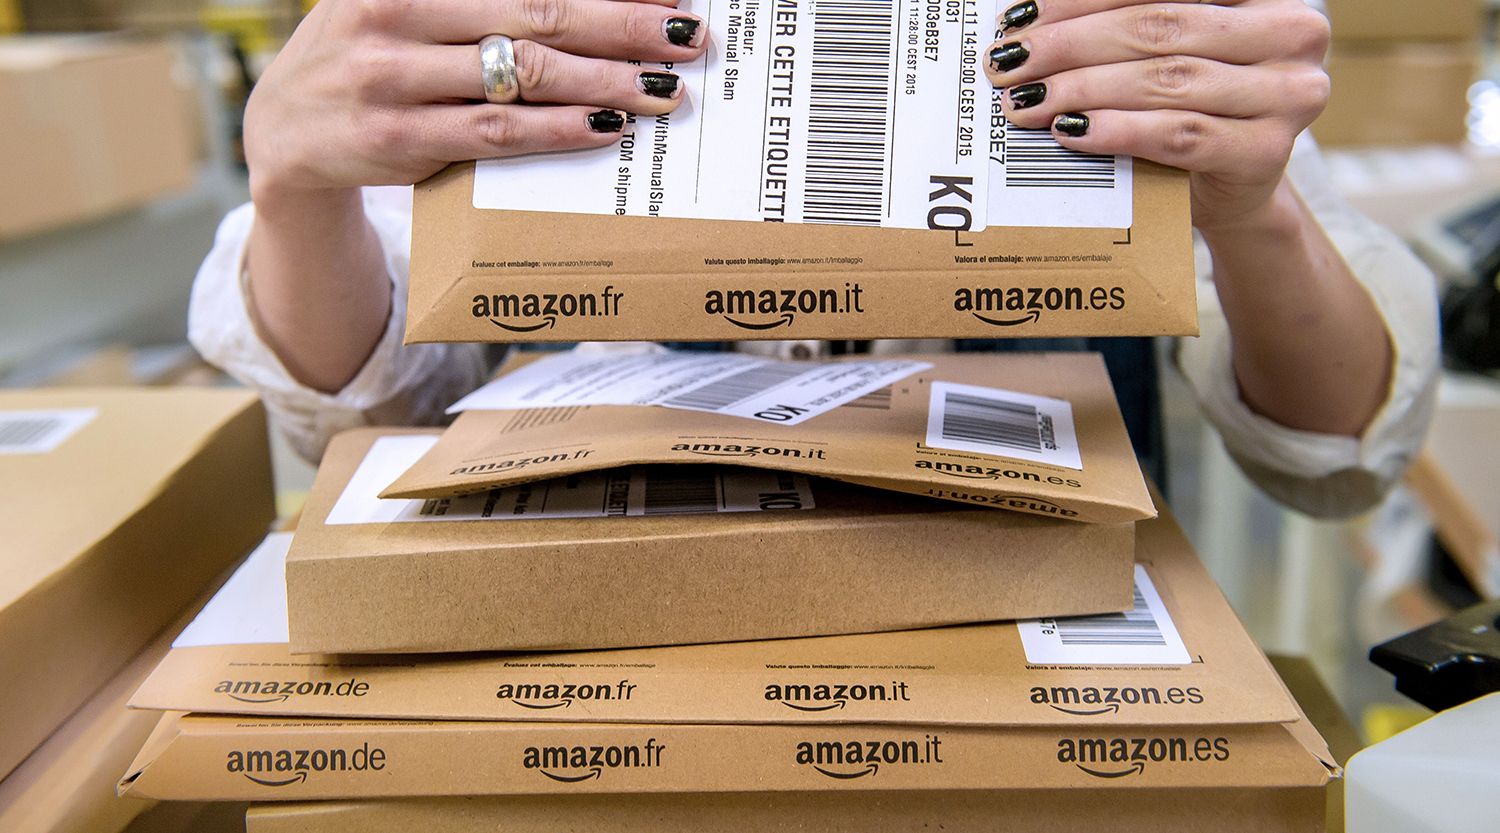 რა უნდა იცოდეთ Amazon- ის ერთდღიანი გარიგების შესახებ